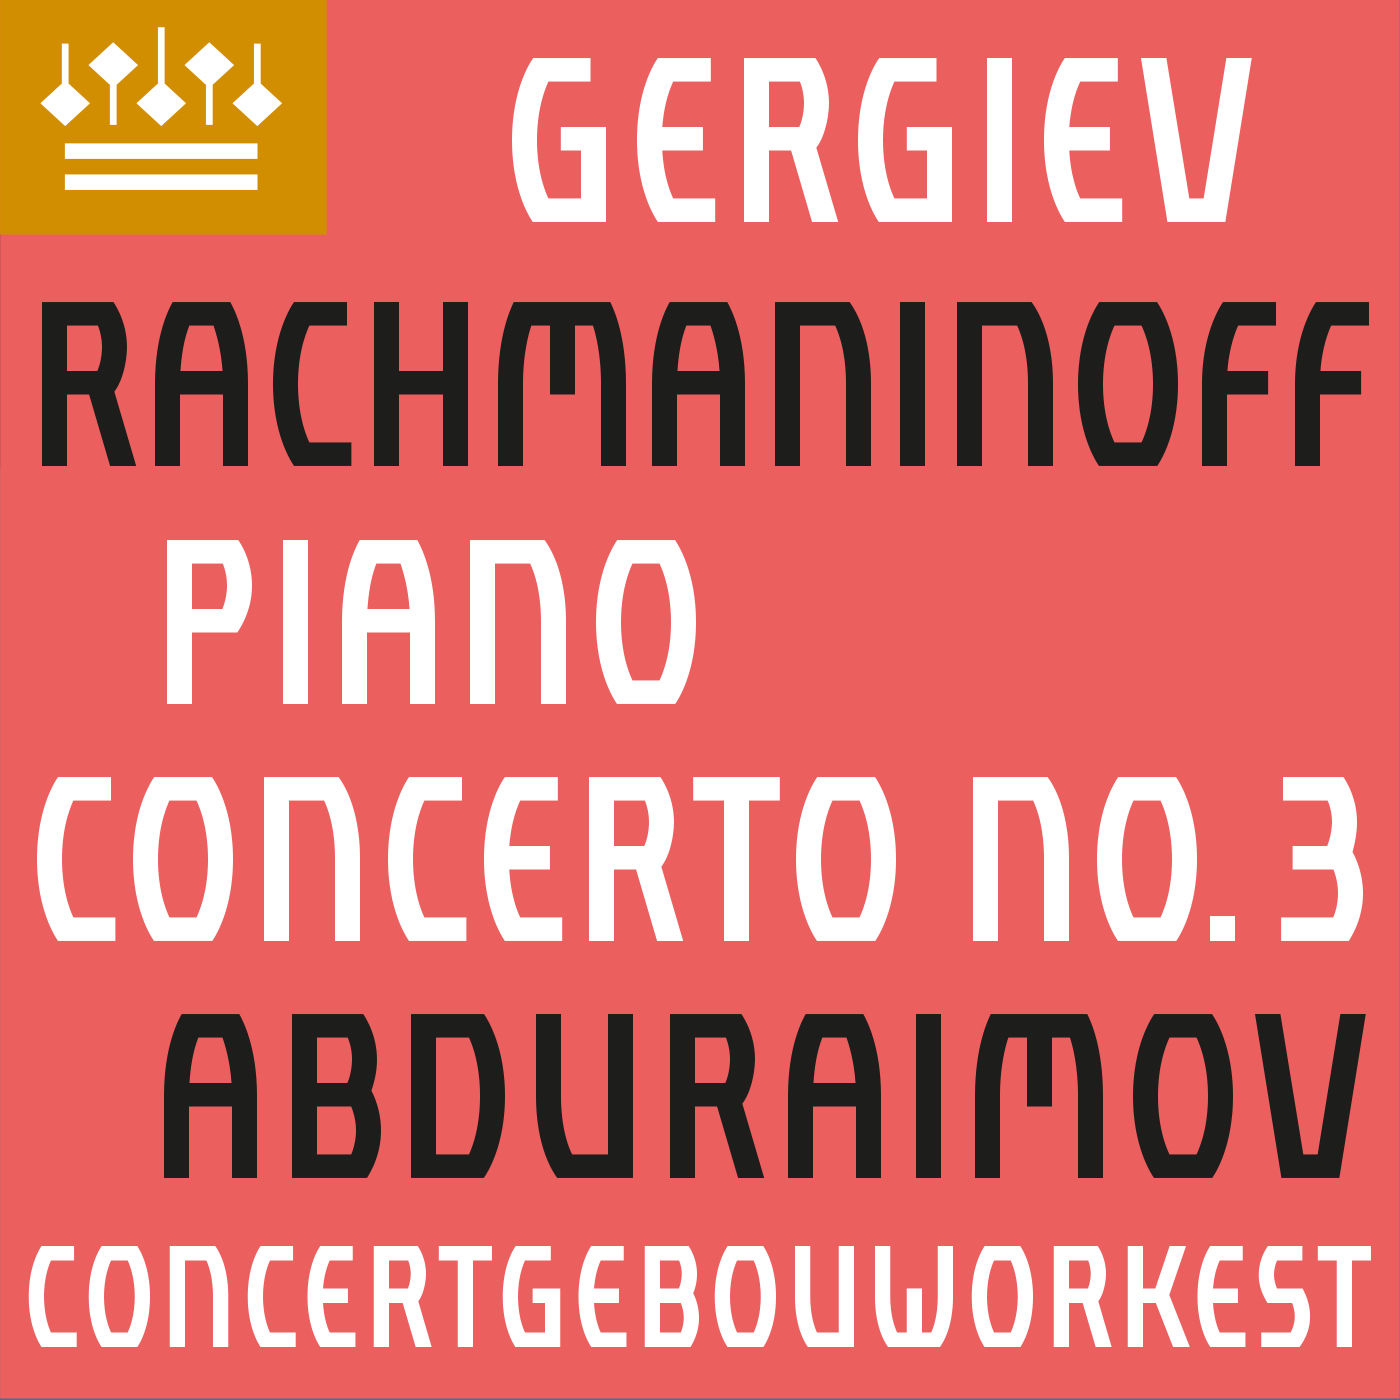 Behzod Abduraimov, Concertgebouworkest, Valery Gergiev - Rachmaninov Piano Concerto No. 3 (2020) [FLAC 24bit/48kHz]